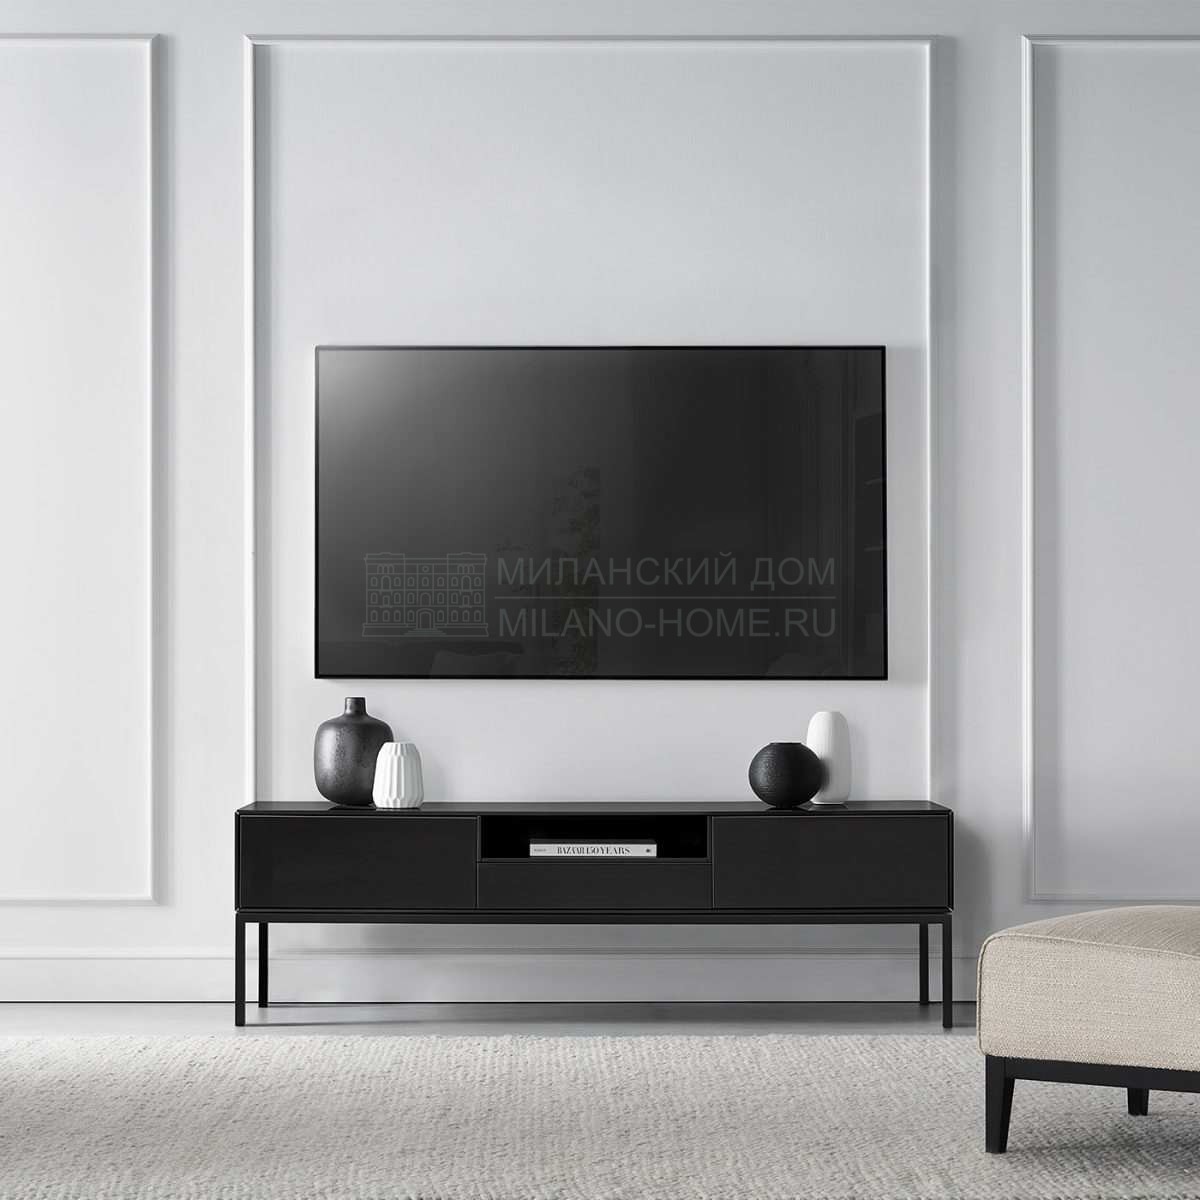 Мебель для ТВ Milano tv cabinet из Италии фабрики TOSCONOVA